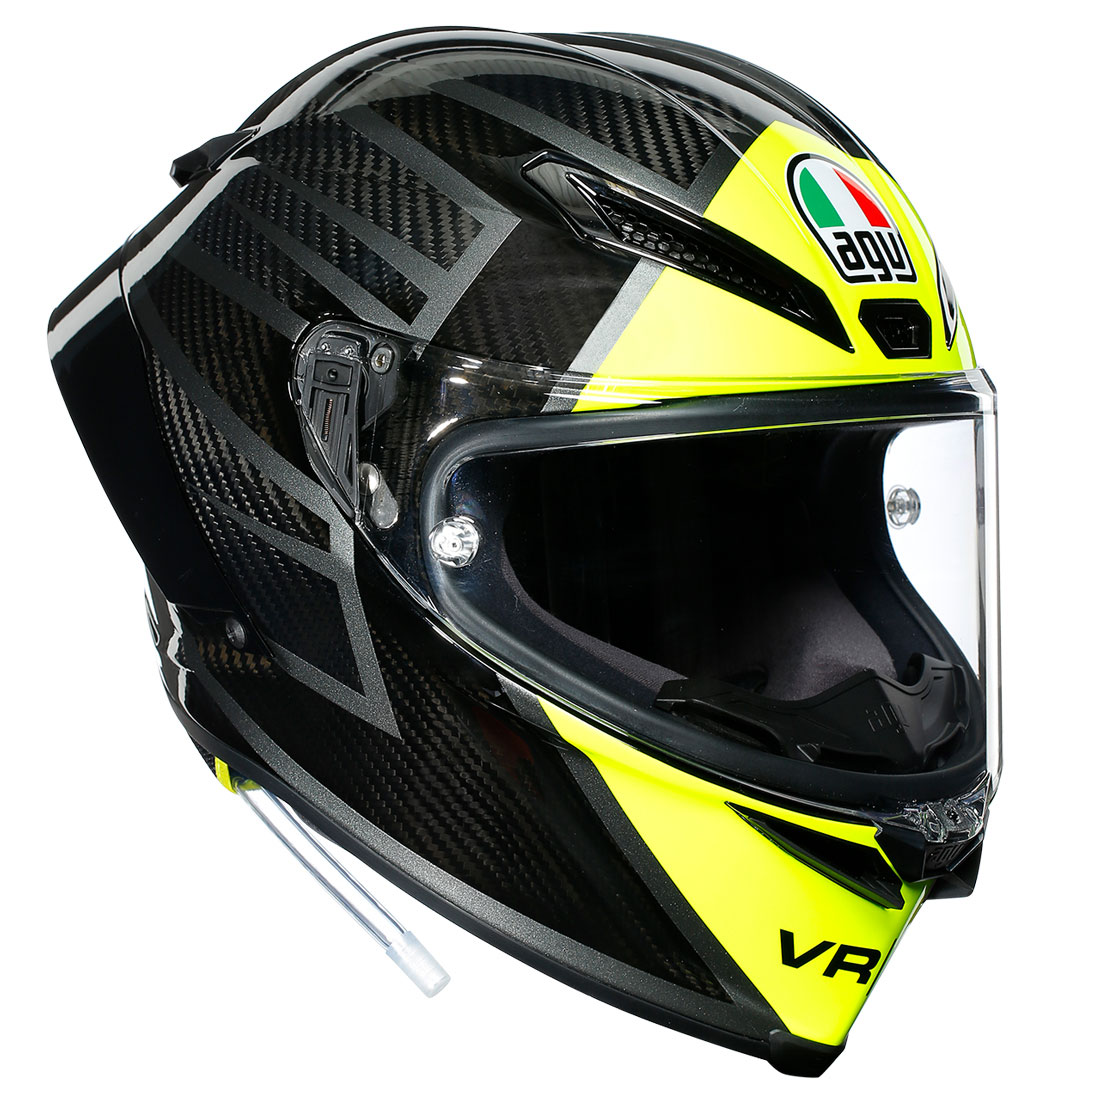 PISTA GP RR - AGV ヘルメット【公式】